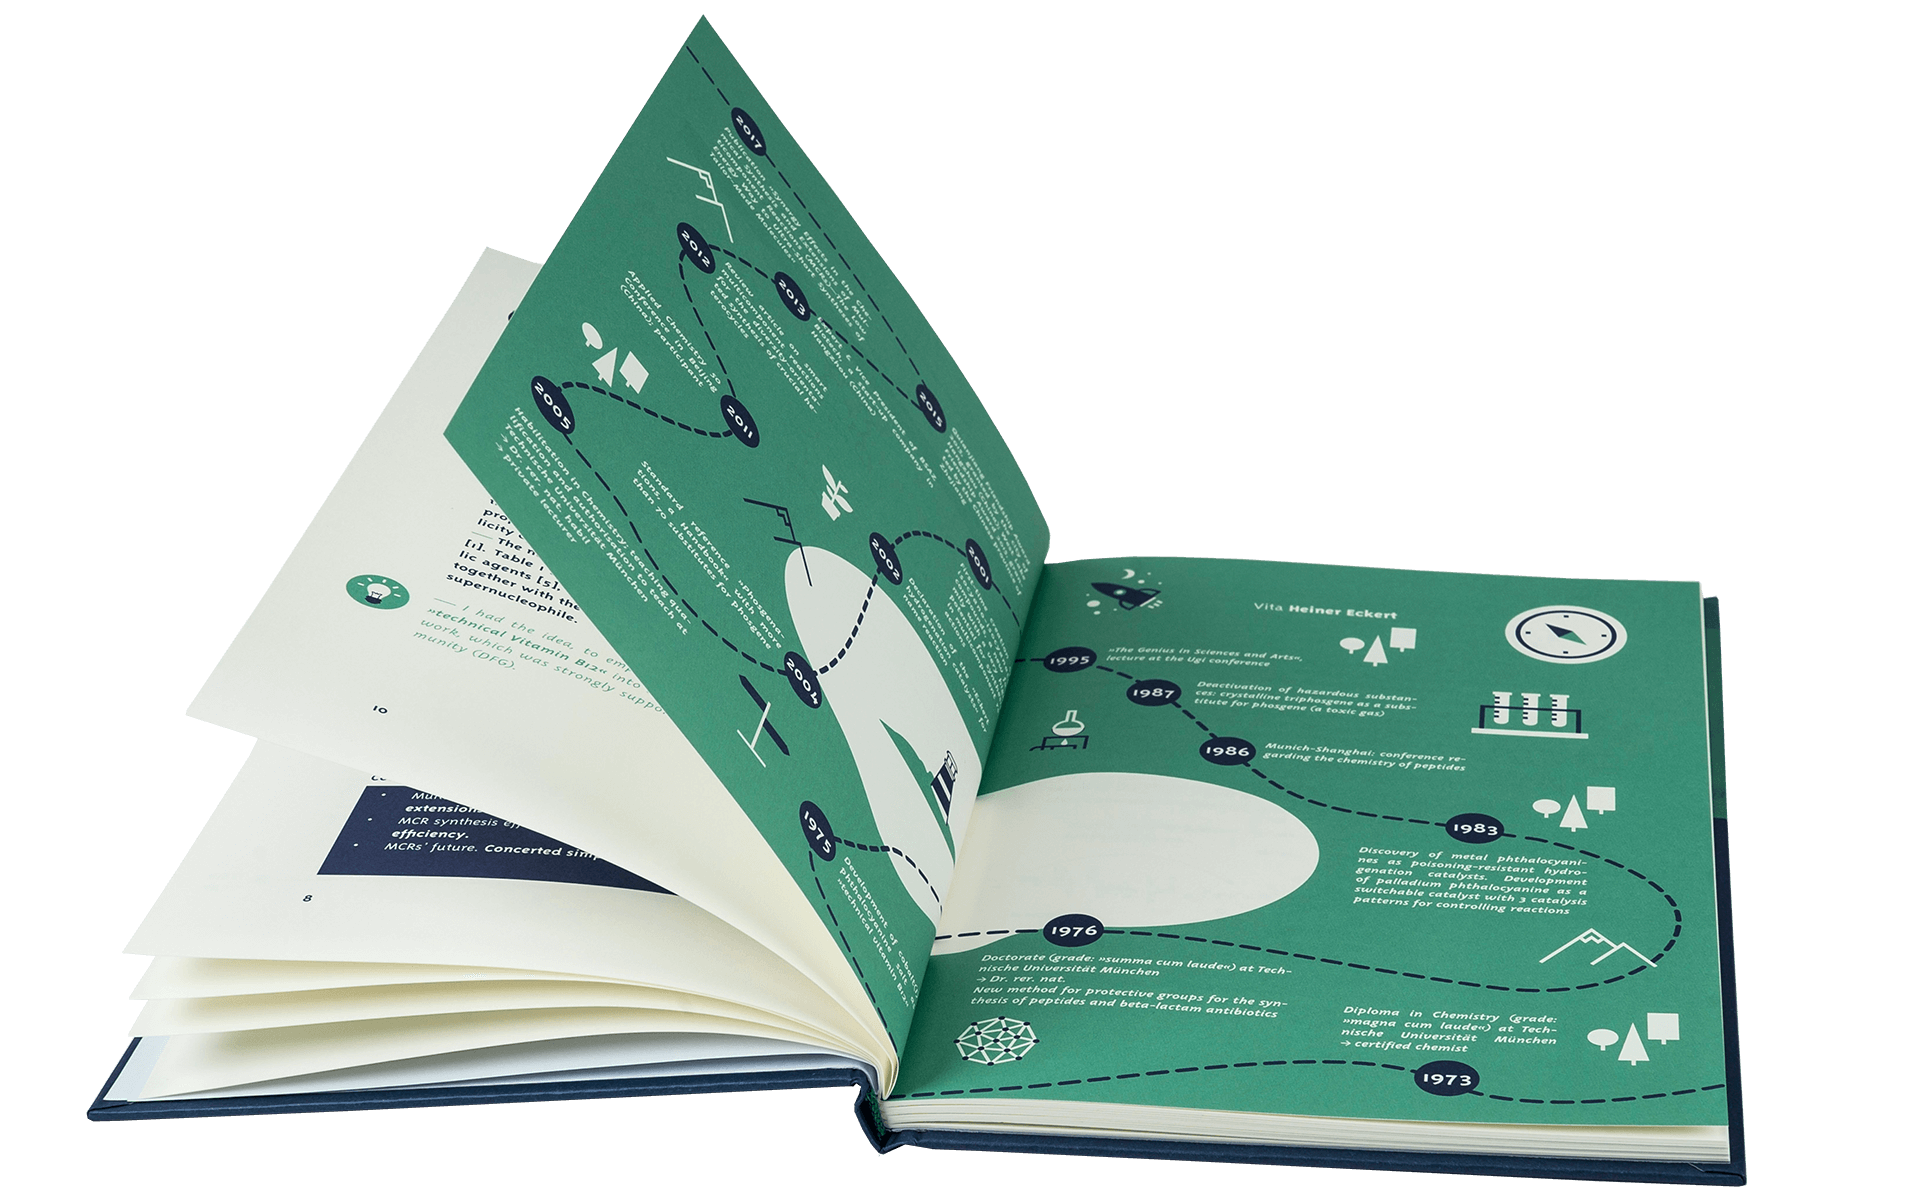 Denken Handeln Buchgestaltung Cover Innensatz Layout Infografik Fine Heininger Wolff Verlag Heiner Eckert Grafik Design Gestaltung